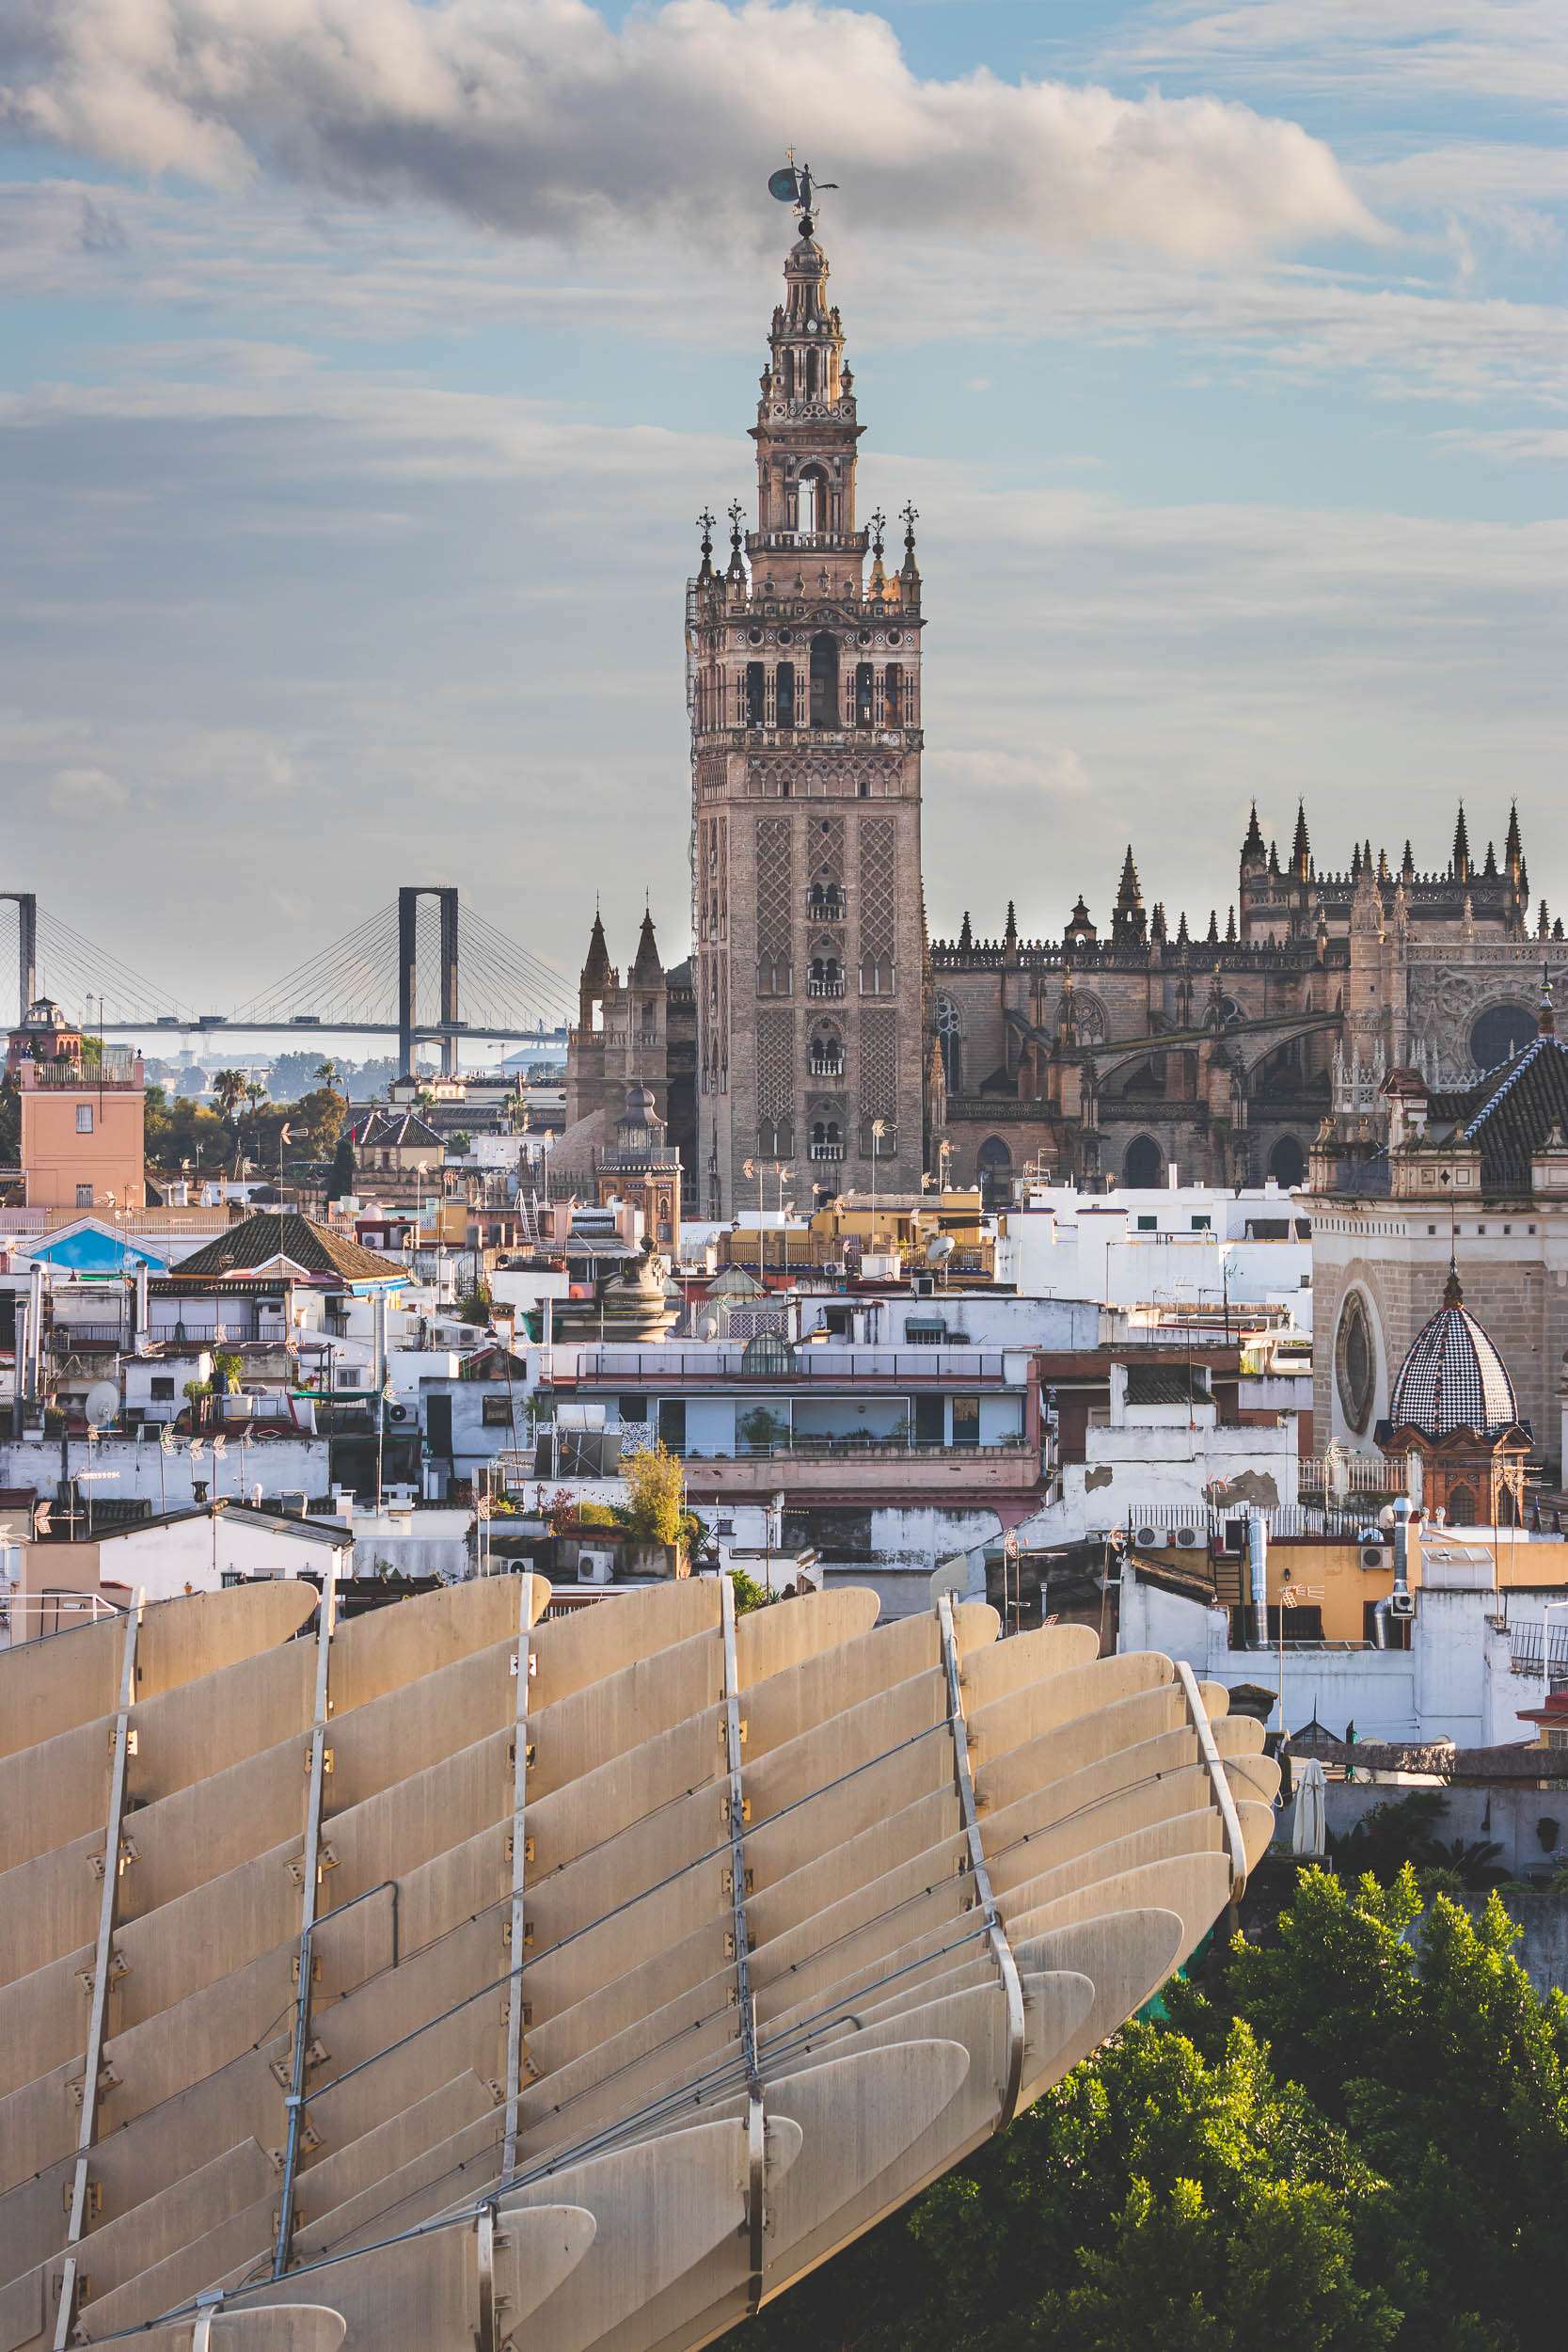 A view of La Giralda in Sevilla, Spain